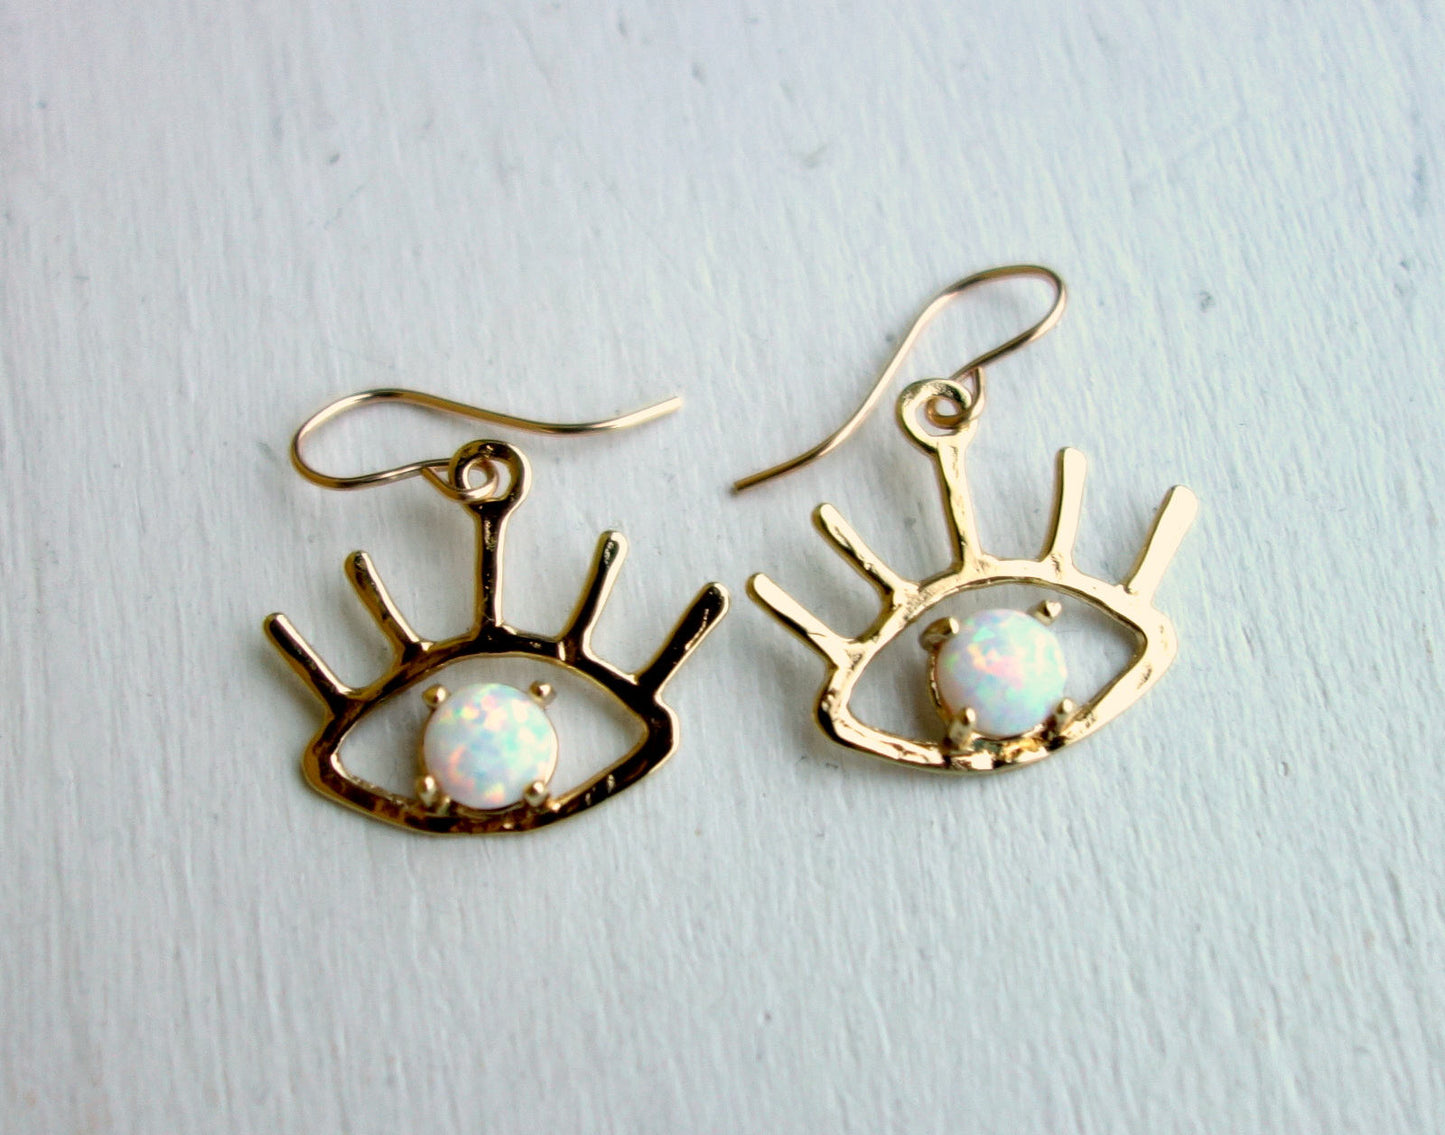 The Beholder Earrings: Gold and Opal Eye Earring Dangle Drops